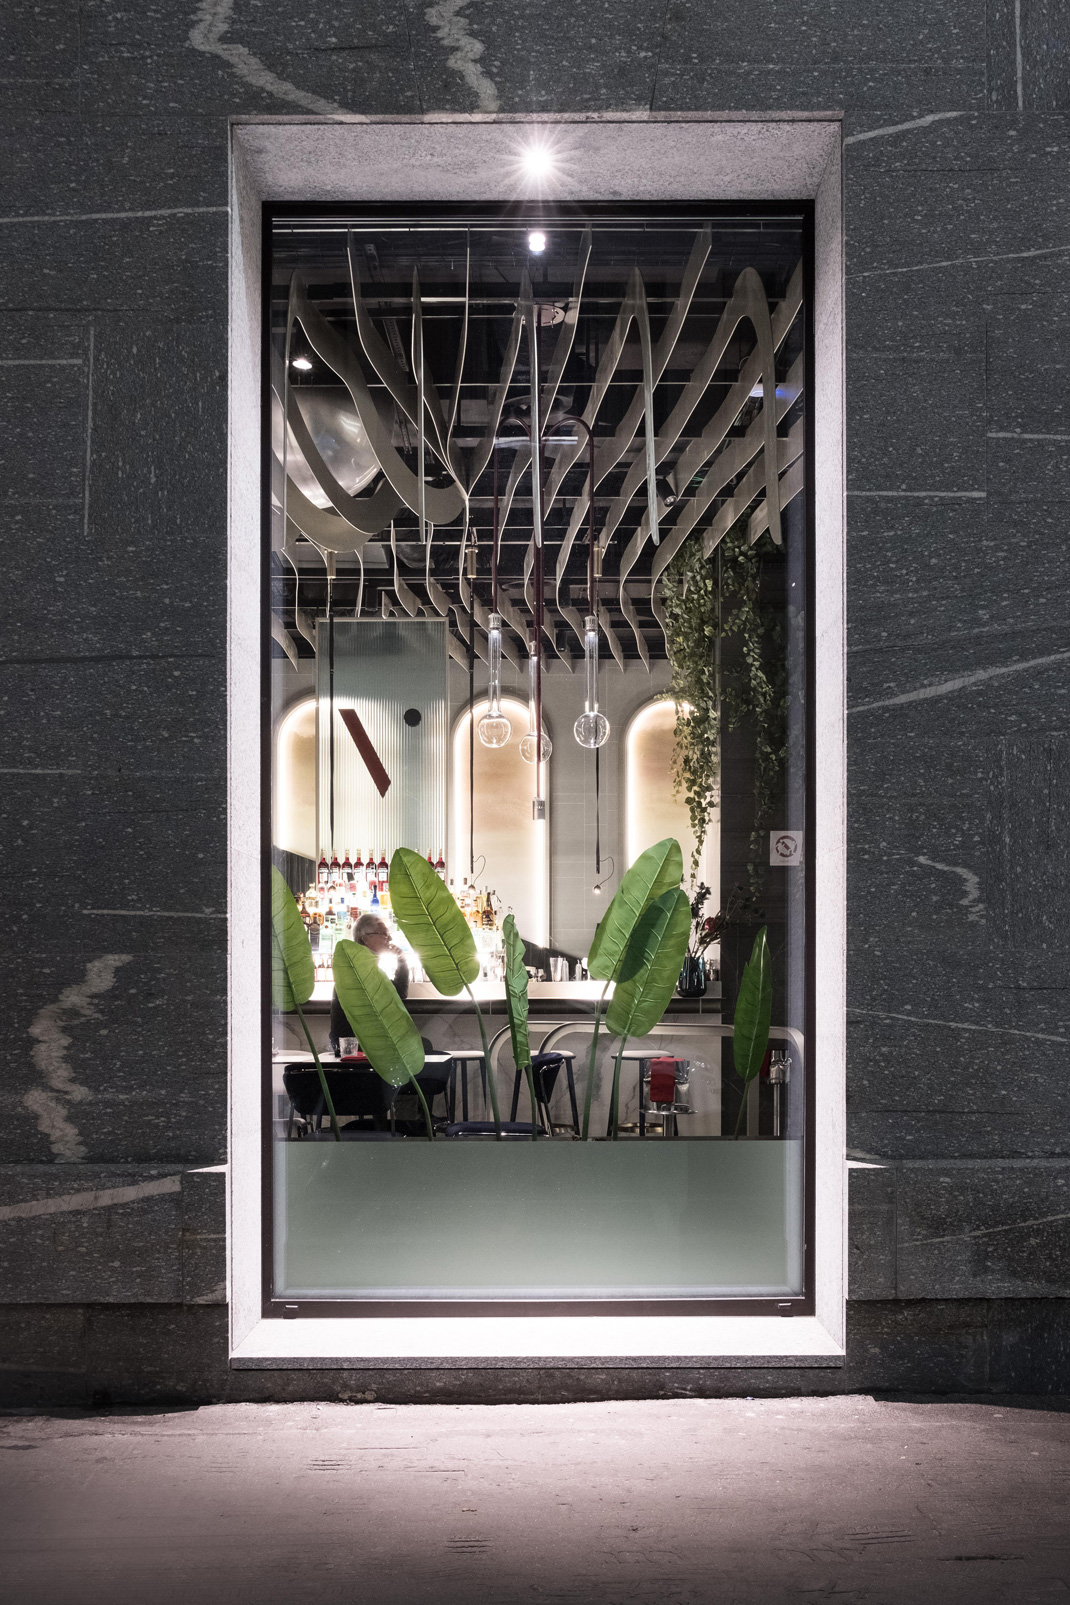 形而上学餐厅OTIVM_Milano 意大利 意大利 米兰 古典主义 波纹砖 霓虹灯 树脂地板  logo设计 vi设计 空间设计